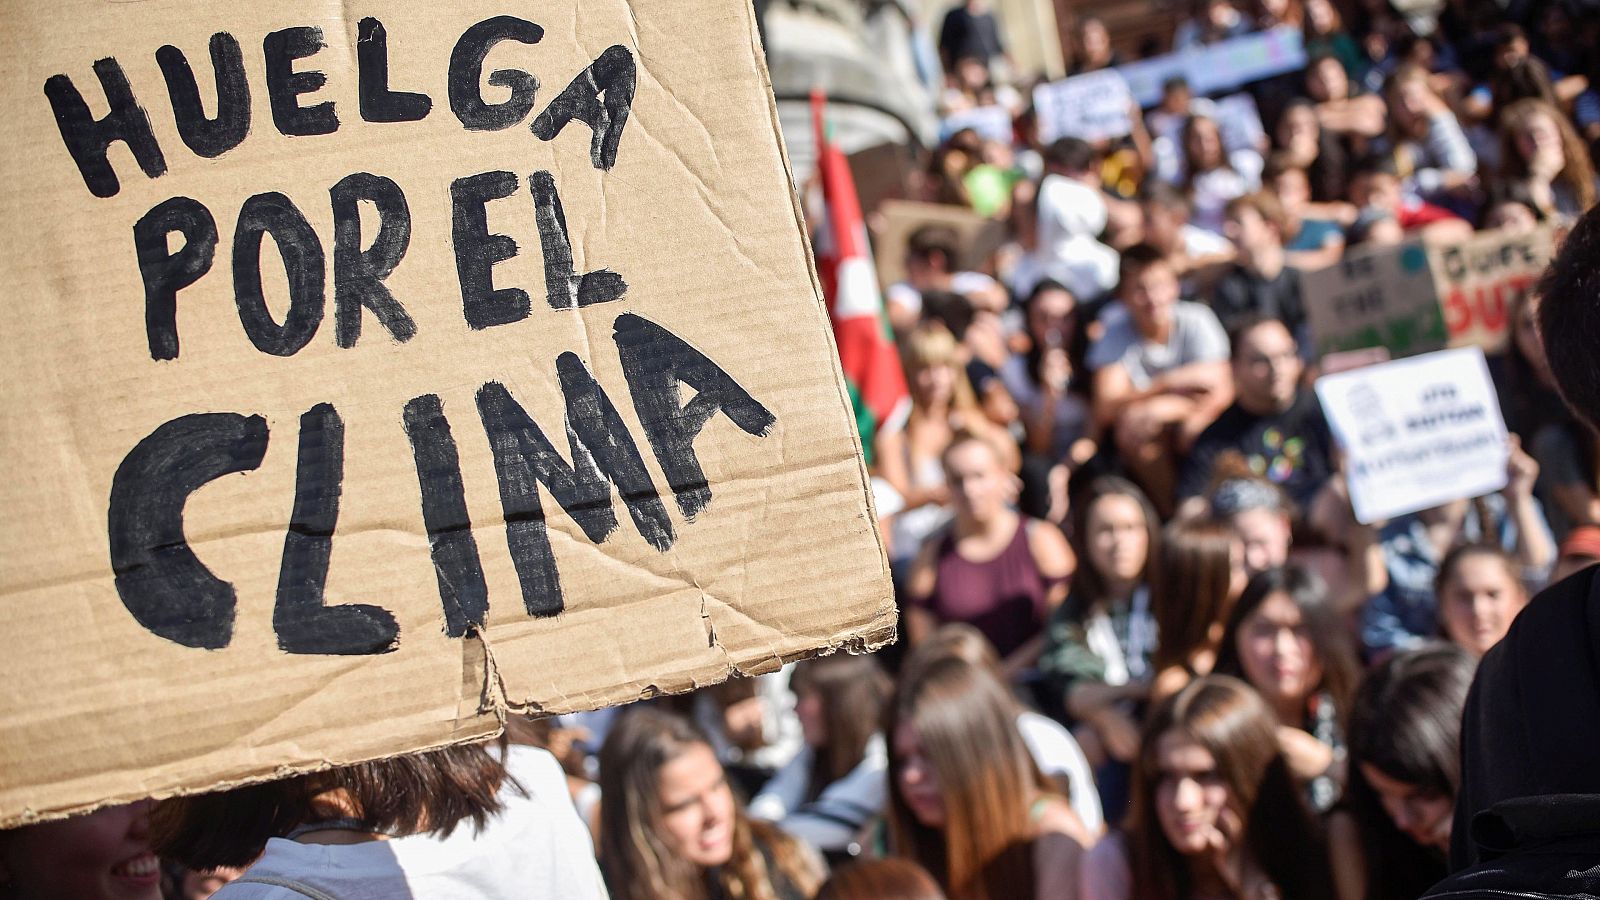 En España cerca de 300 organizaciones se han sumado a la protesta global y han convocado manifestaciones en decenas de ciudades. En Madrid, Fridays for Future arrancaba la jornada con una bicicletada por el centro de la capital para calentar motores 